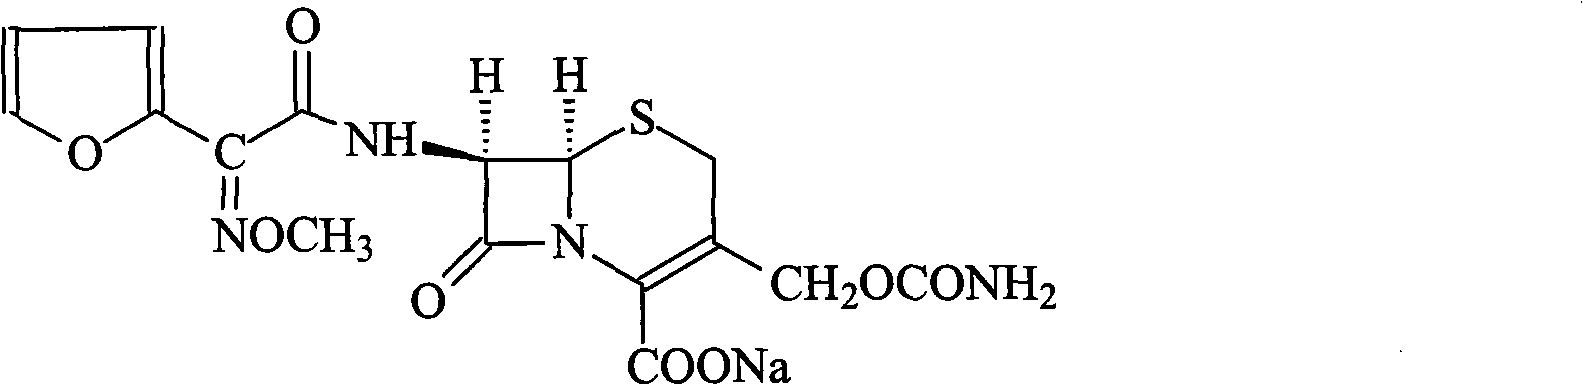 Method for synthesizing cefuroxime sodium